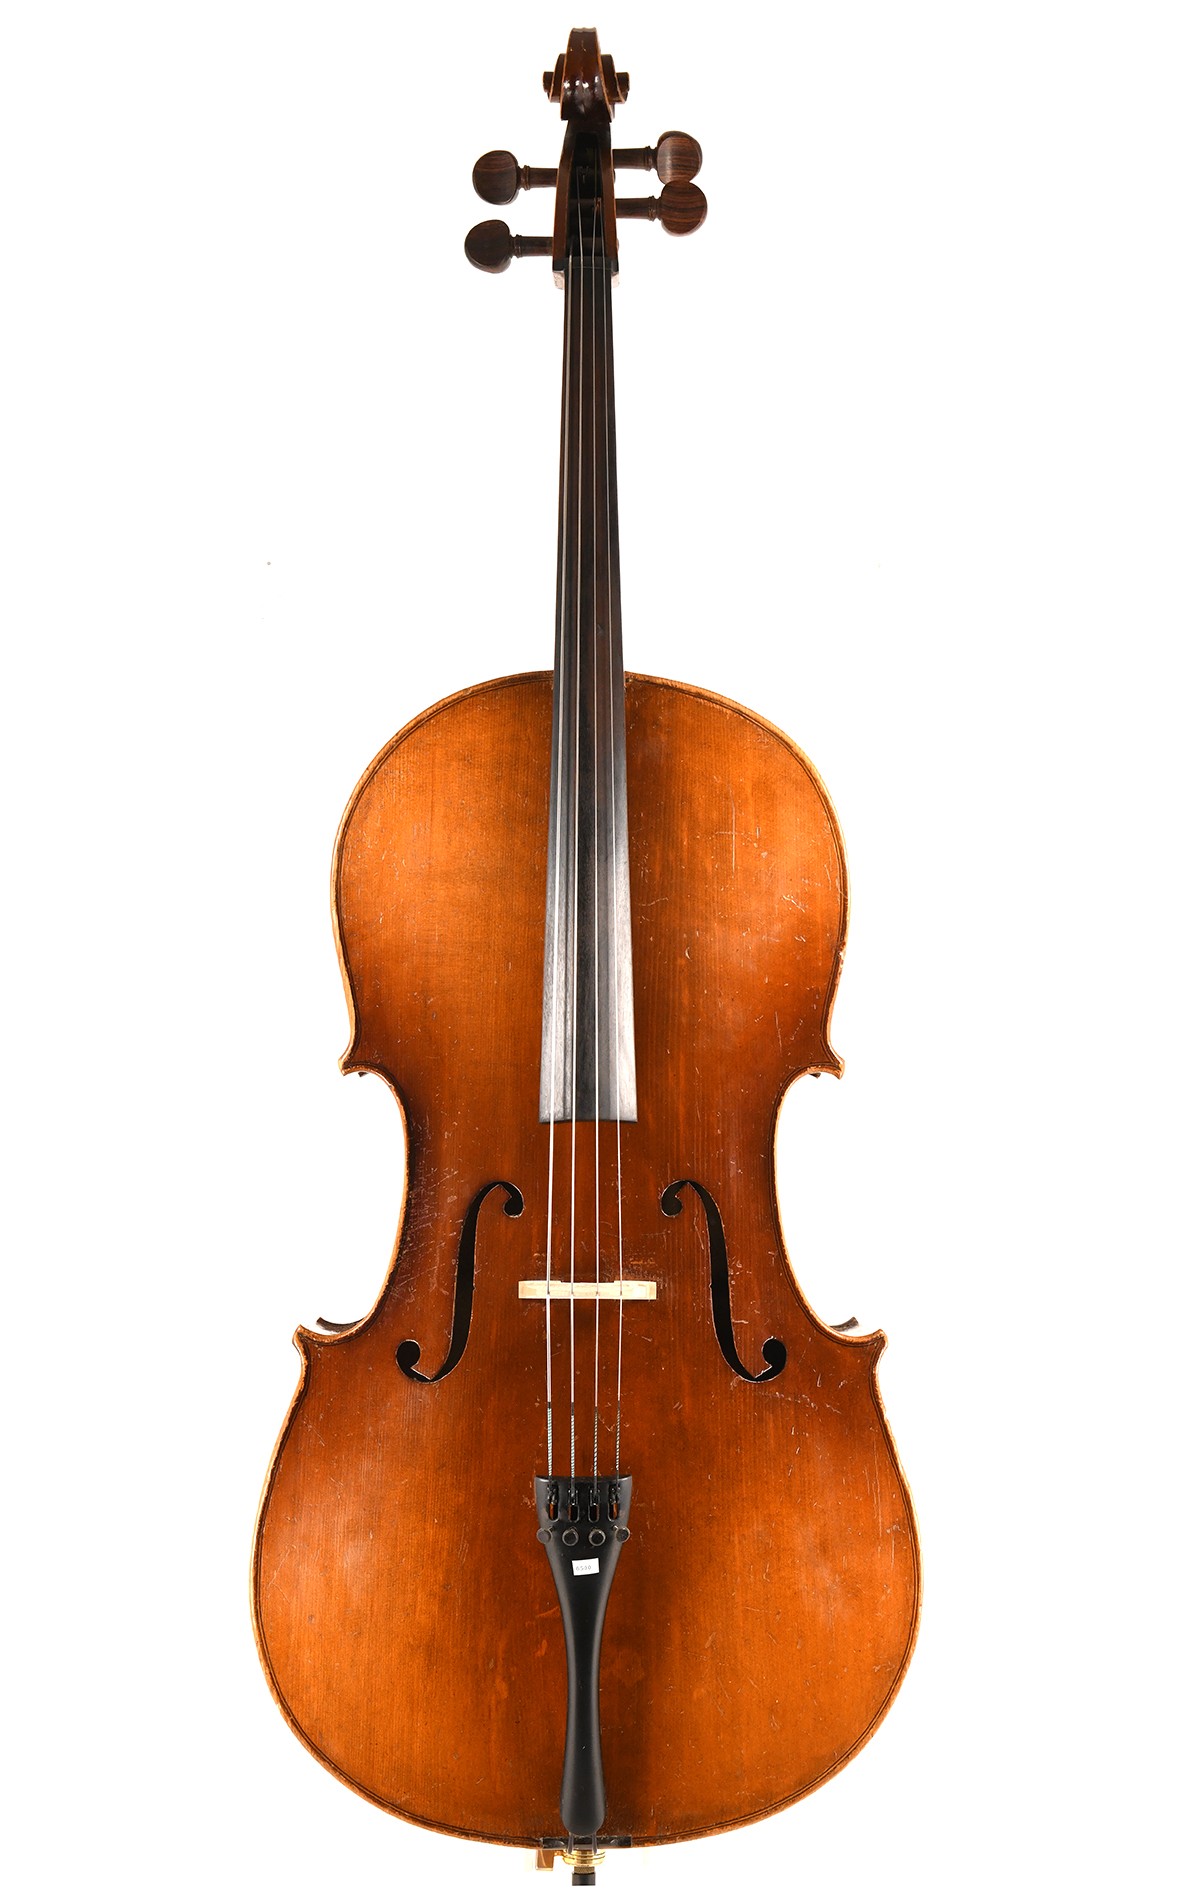 19th century German cello from Markneukirchen